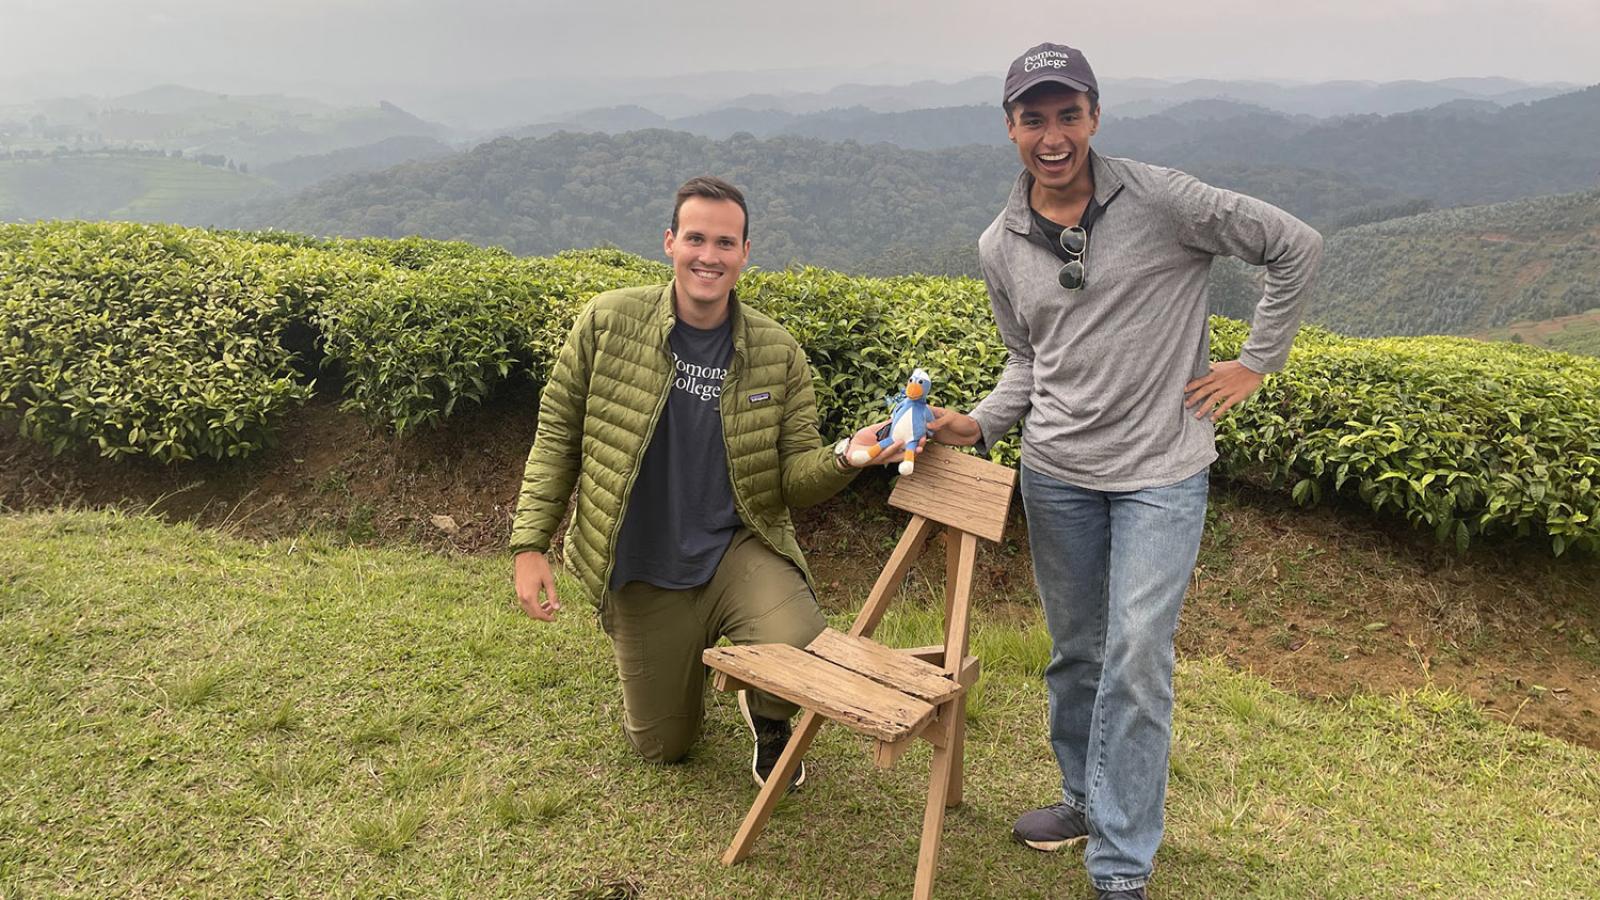 Dave Ruiz and Daniel Harrell outdoors in Rwanda